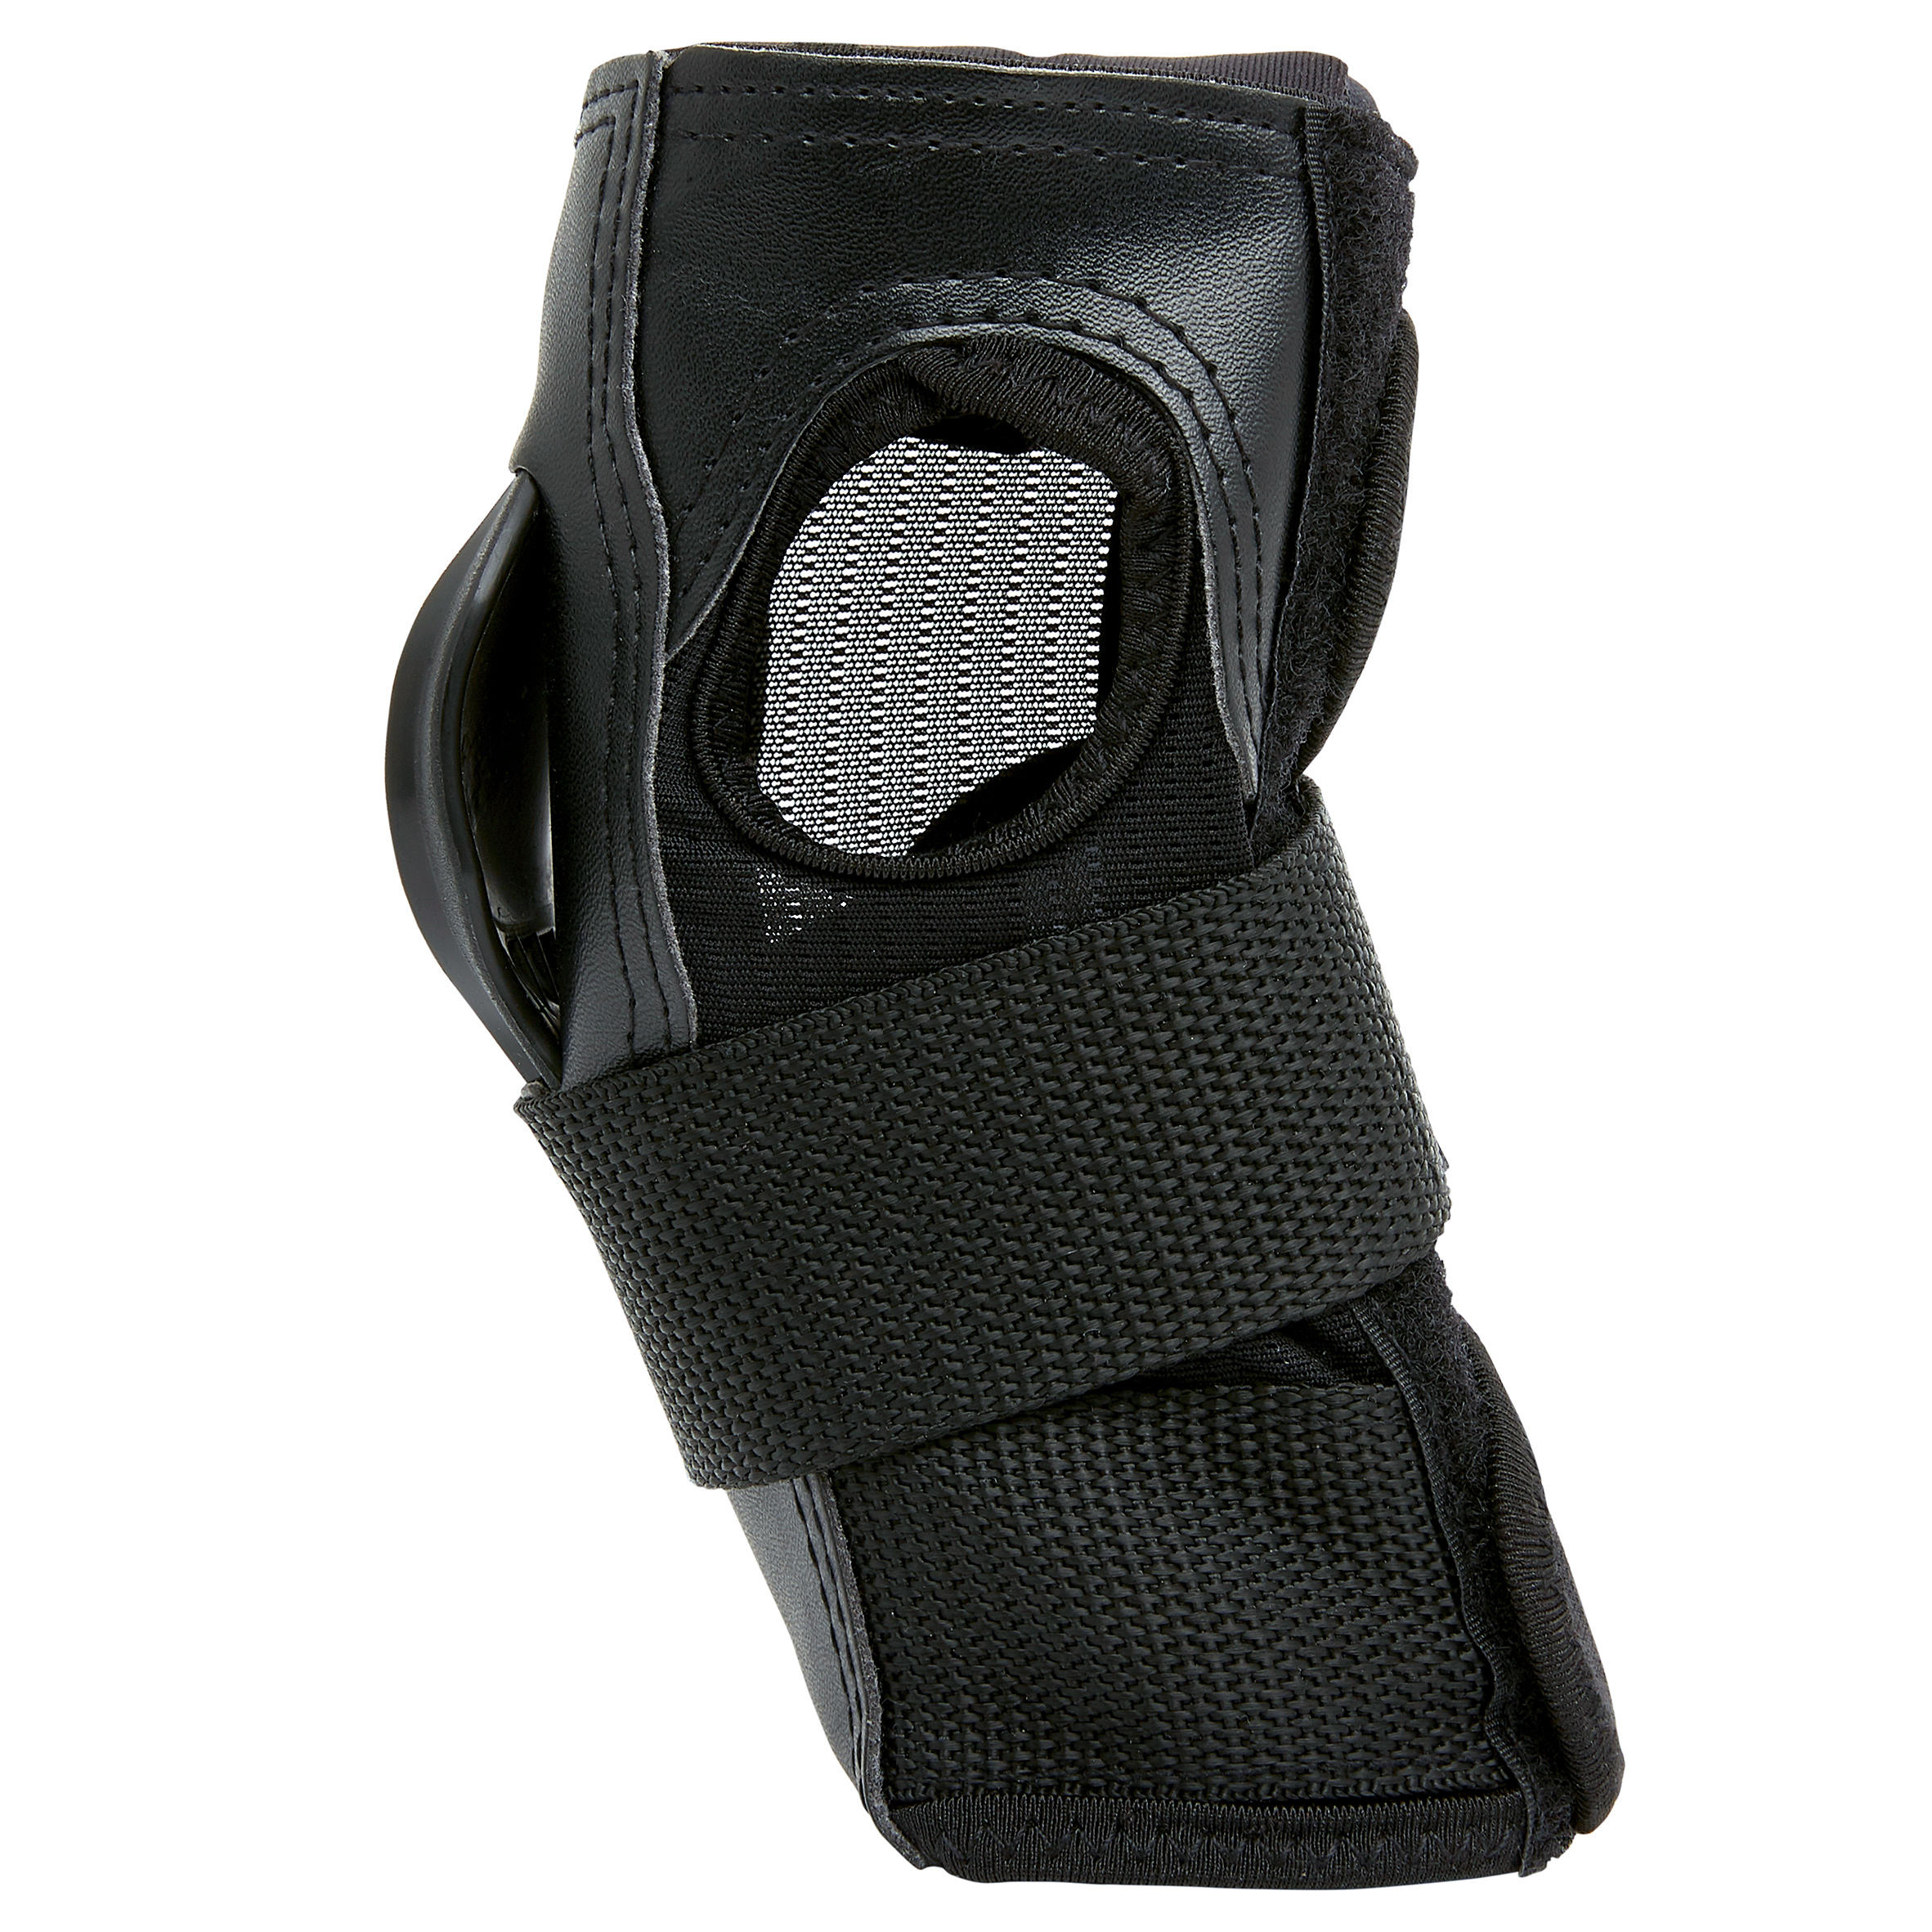 Protège-poignets patin et planche à roulettes adulte FIT500 noirs gris - OXELO